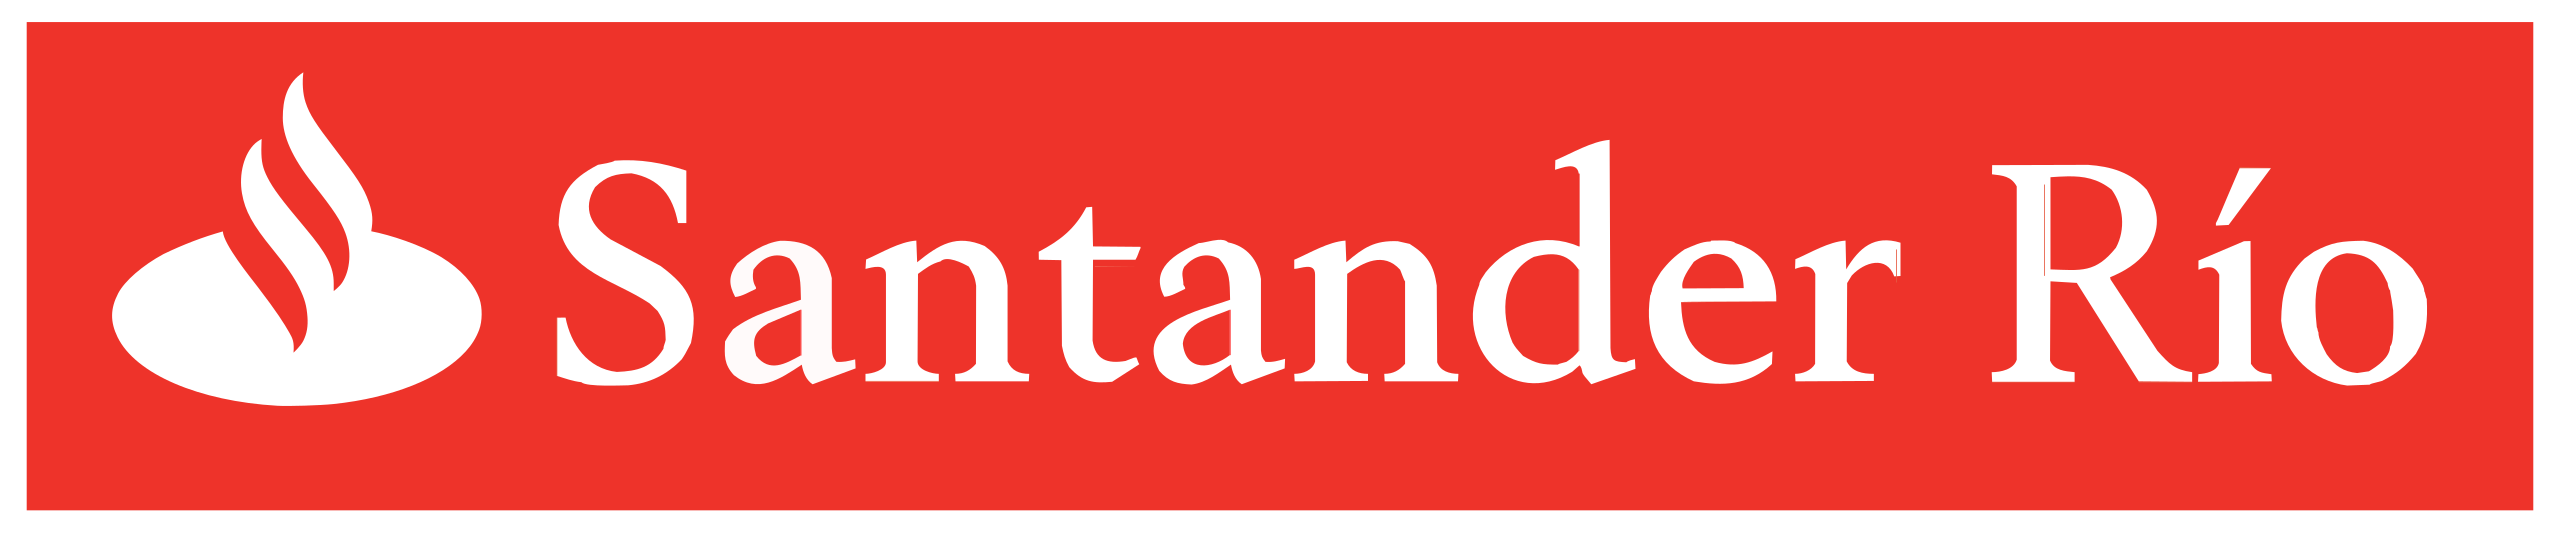 Santanderrio_logo.svg